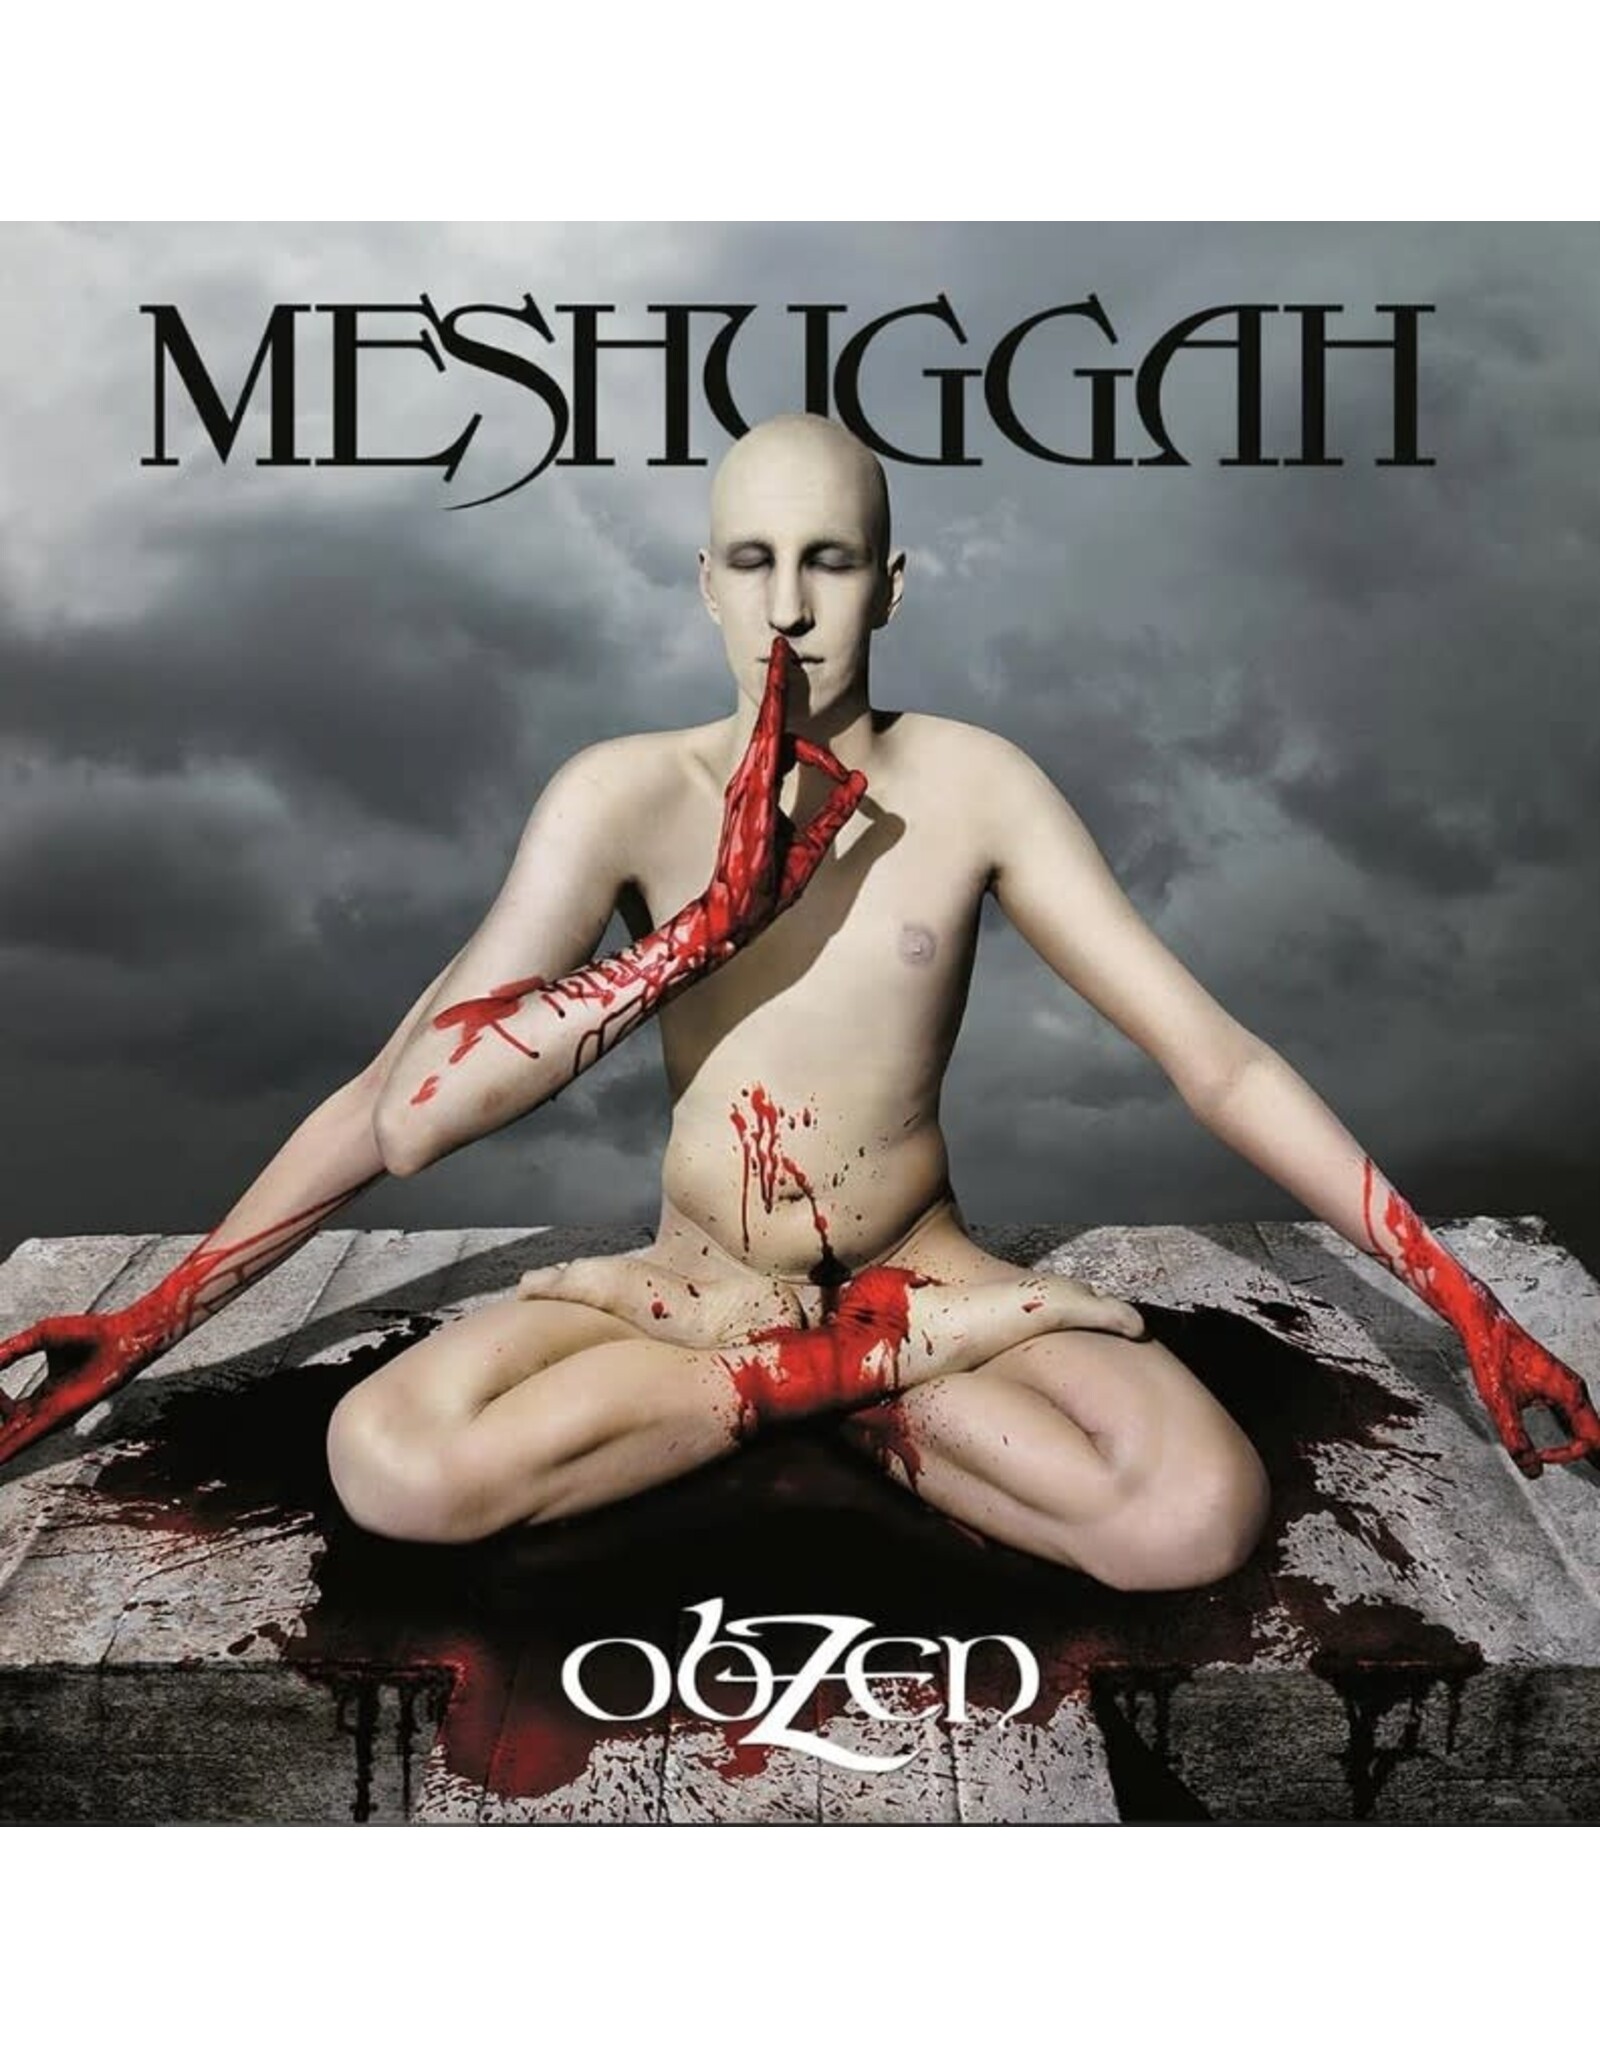 Meshuggah - ObZen 15th Ann. (Clear, White, and Blue Vinyl) 2LP